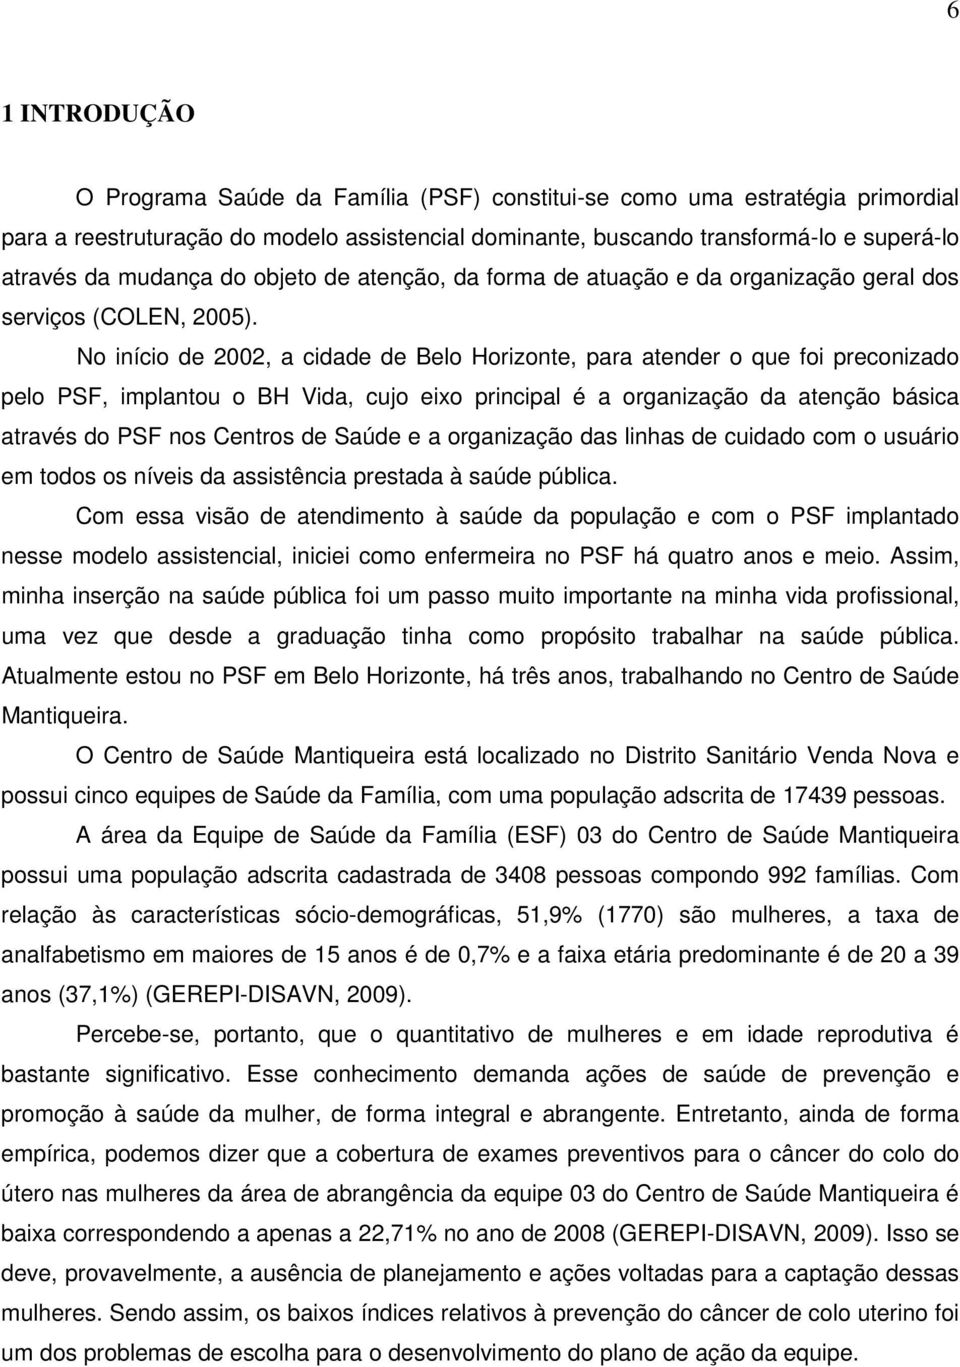 No início de 2002, a cidade de Belo Horizonte, para atender o que foi preconizado pelo PSF, implantou o BH Vida, cujo eixo principal é a organização da atenção básica através do PSF nos Centros de